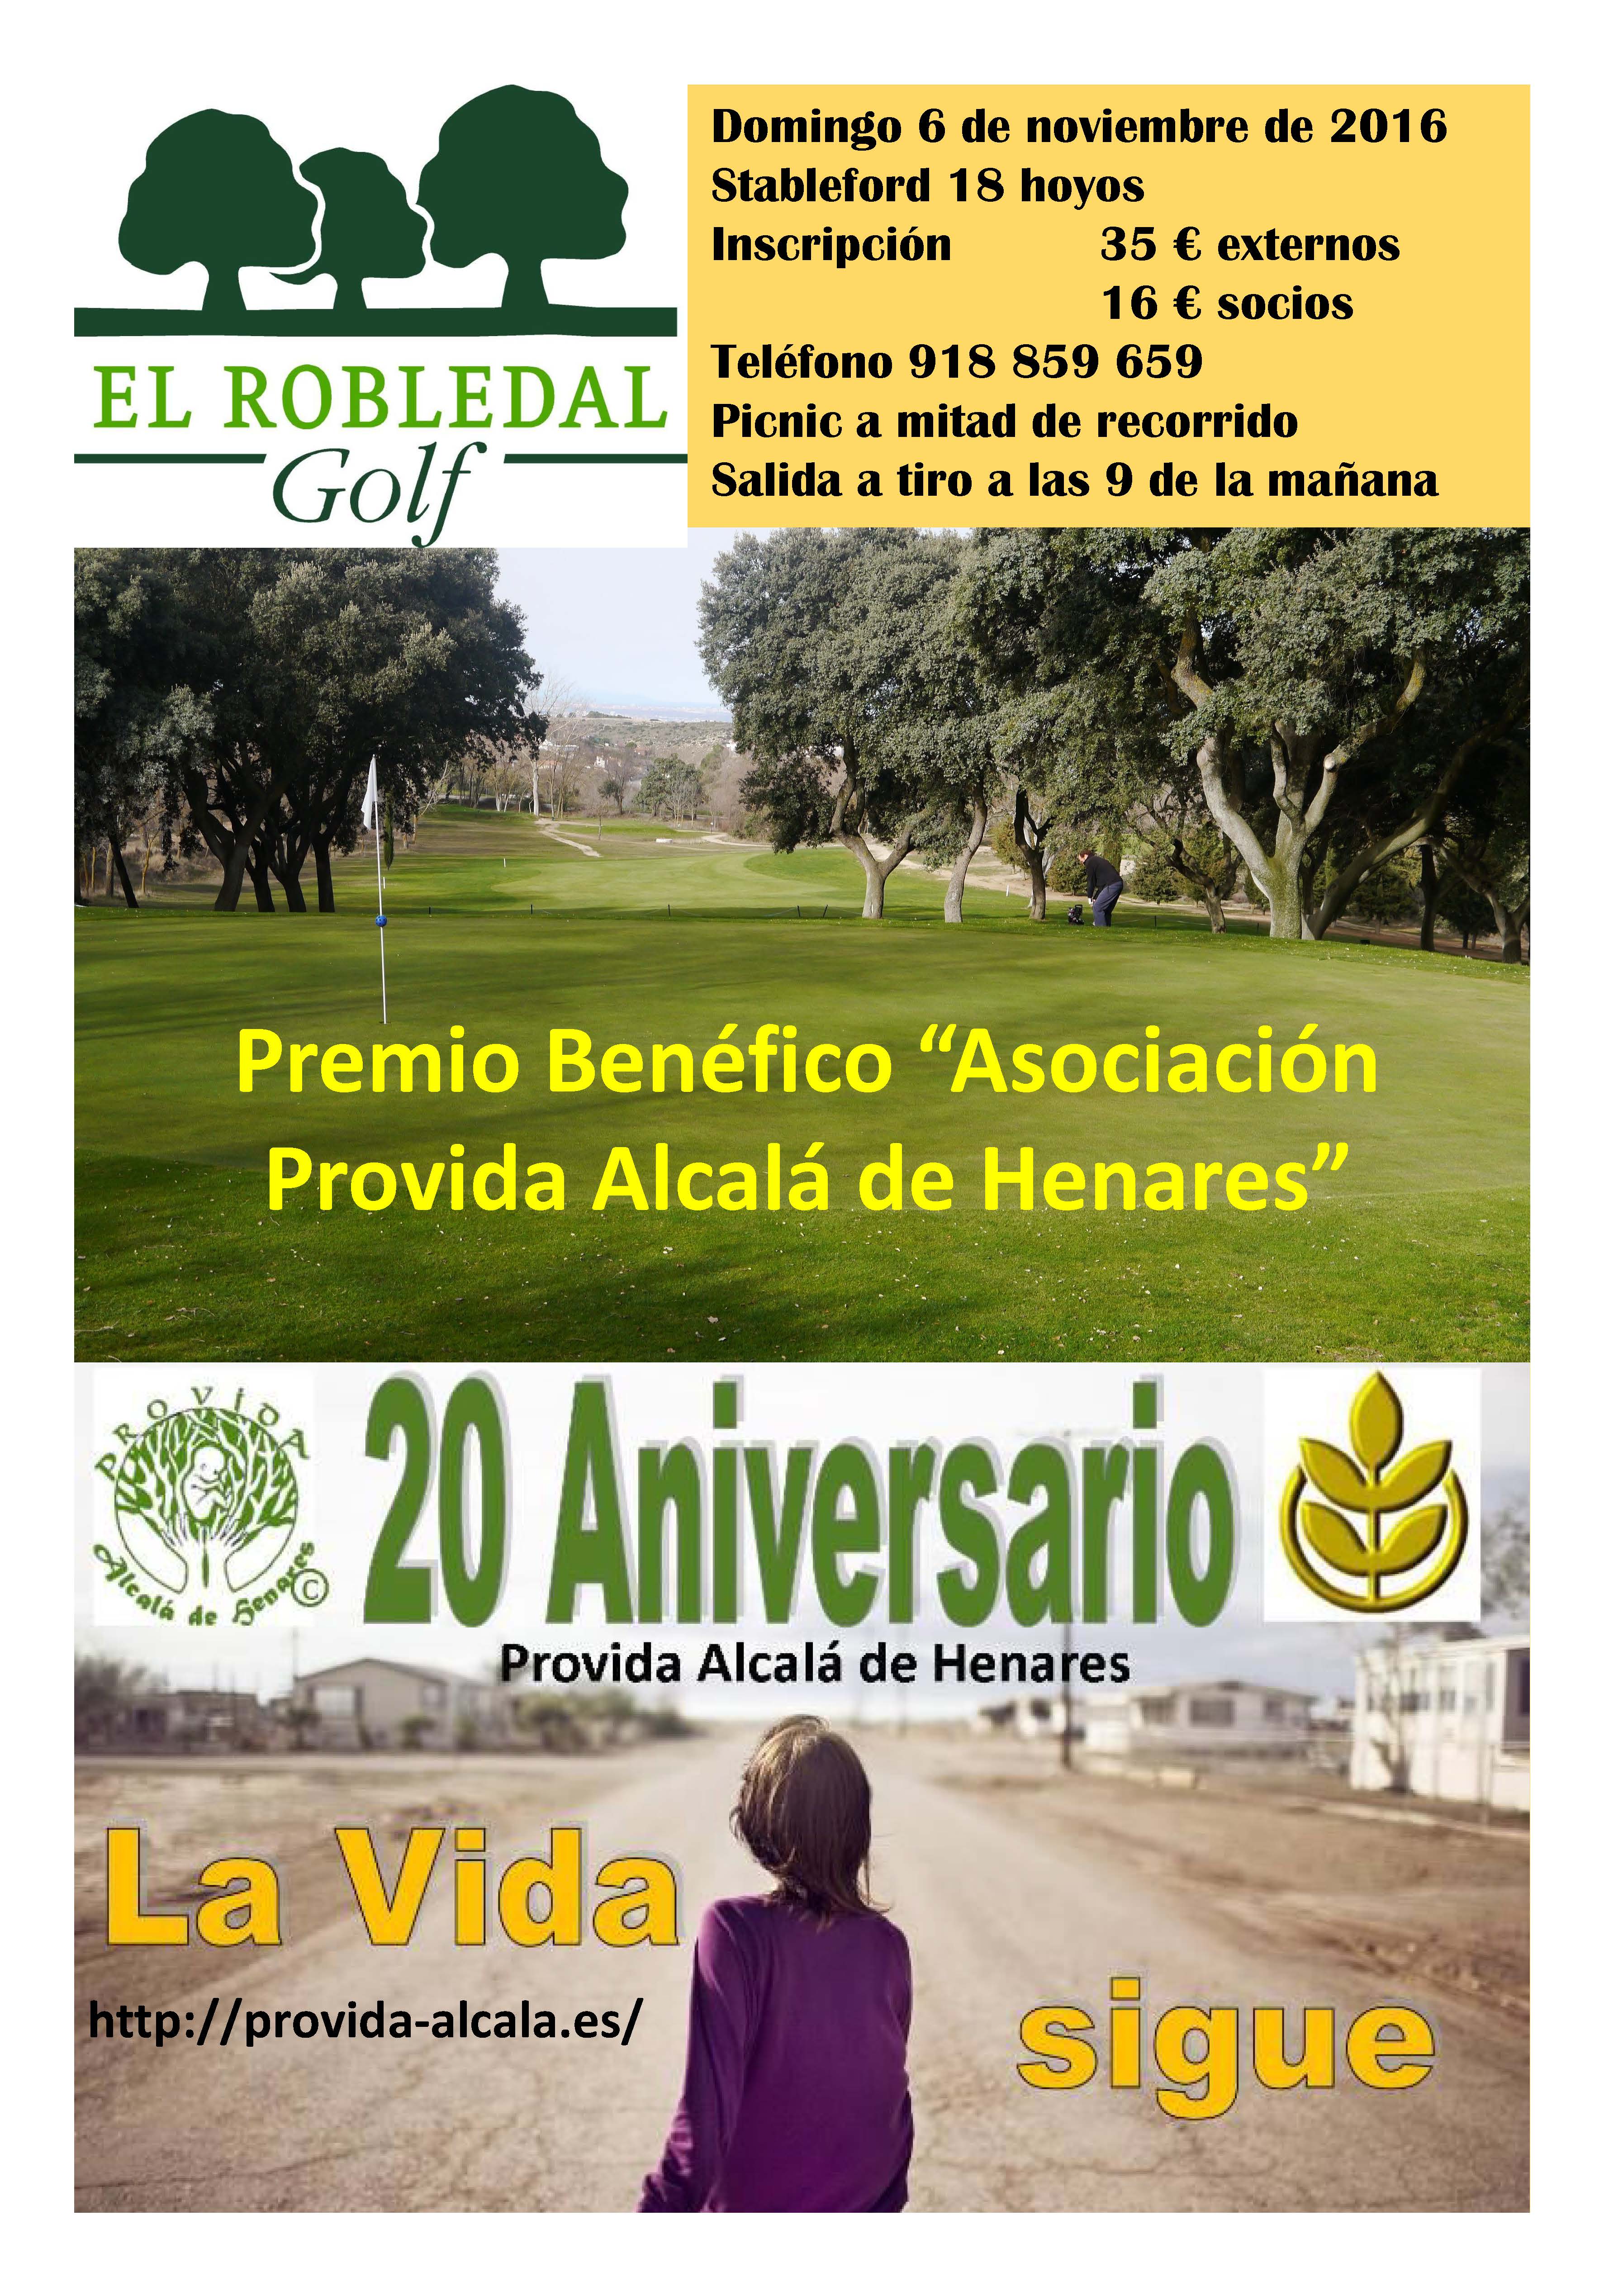 Premio Benéfico “Asociación Provida Alcalá de Henares”